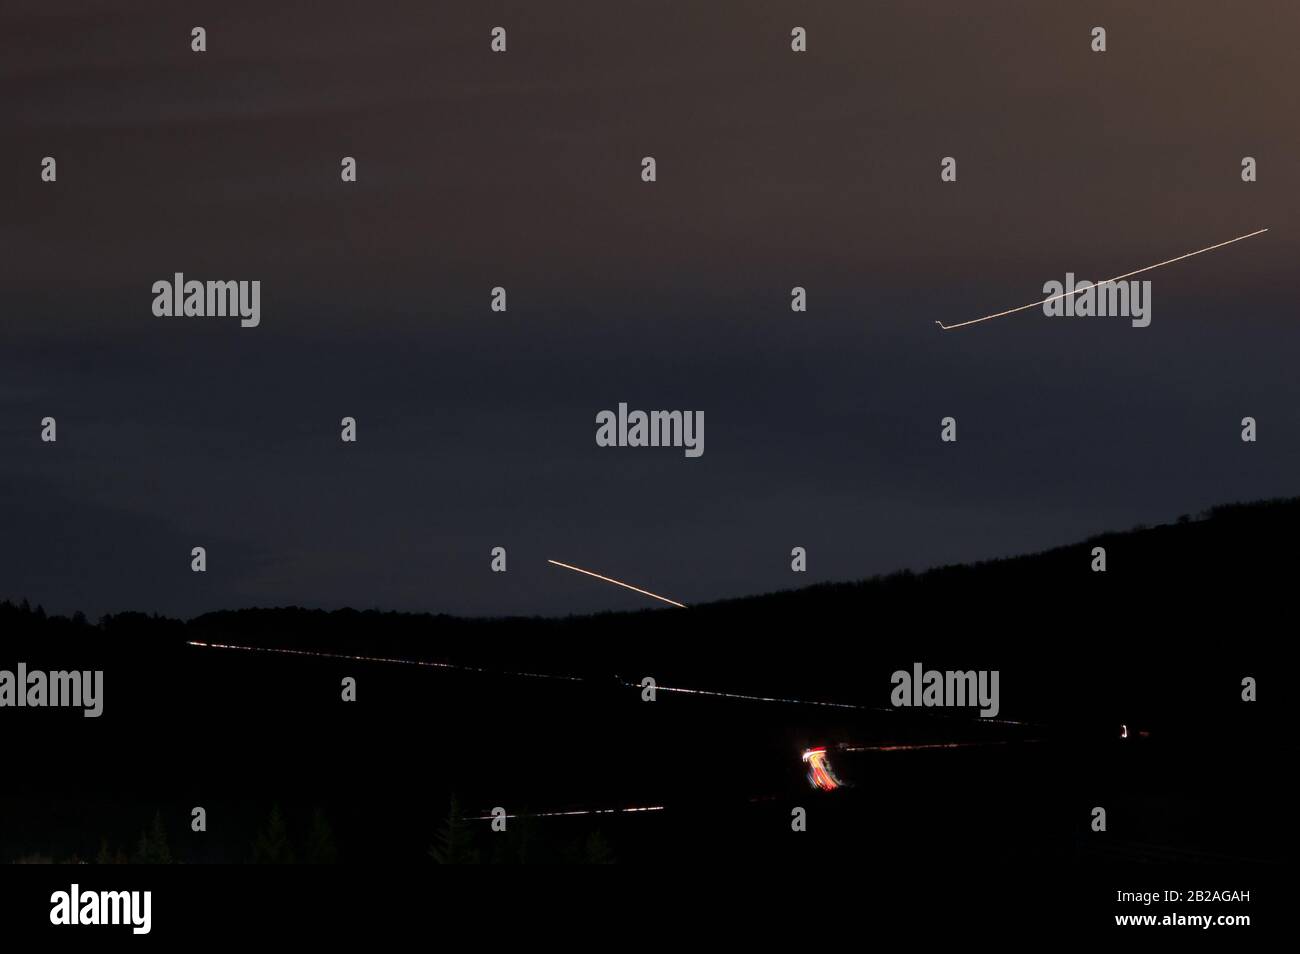 Lange Belichtungszeit mit Lichtwegen einer Straße und Lichtwegen von zwei Flugzeugen mit dem Berg in Silhouette Stockfoto